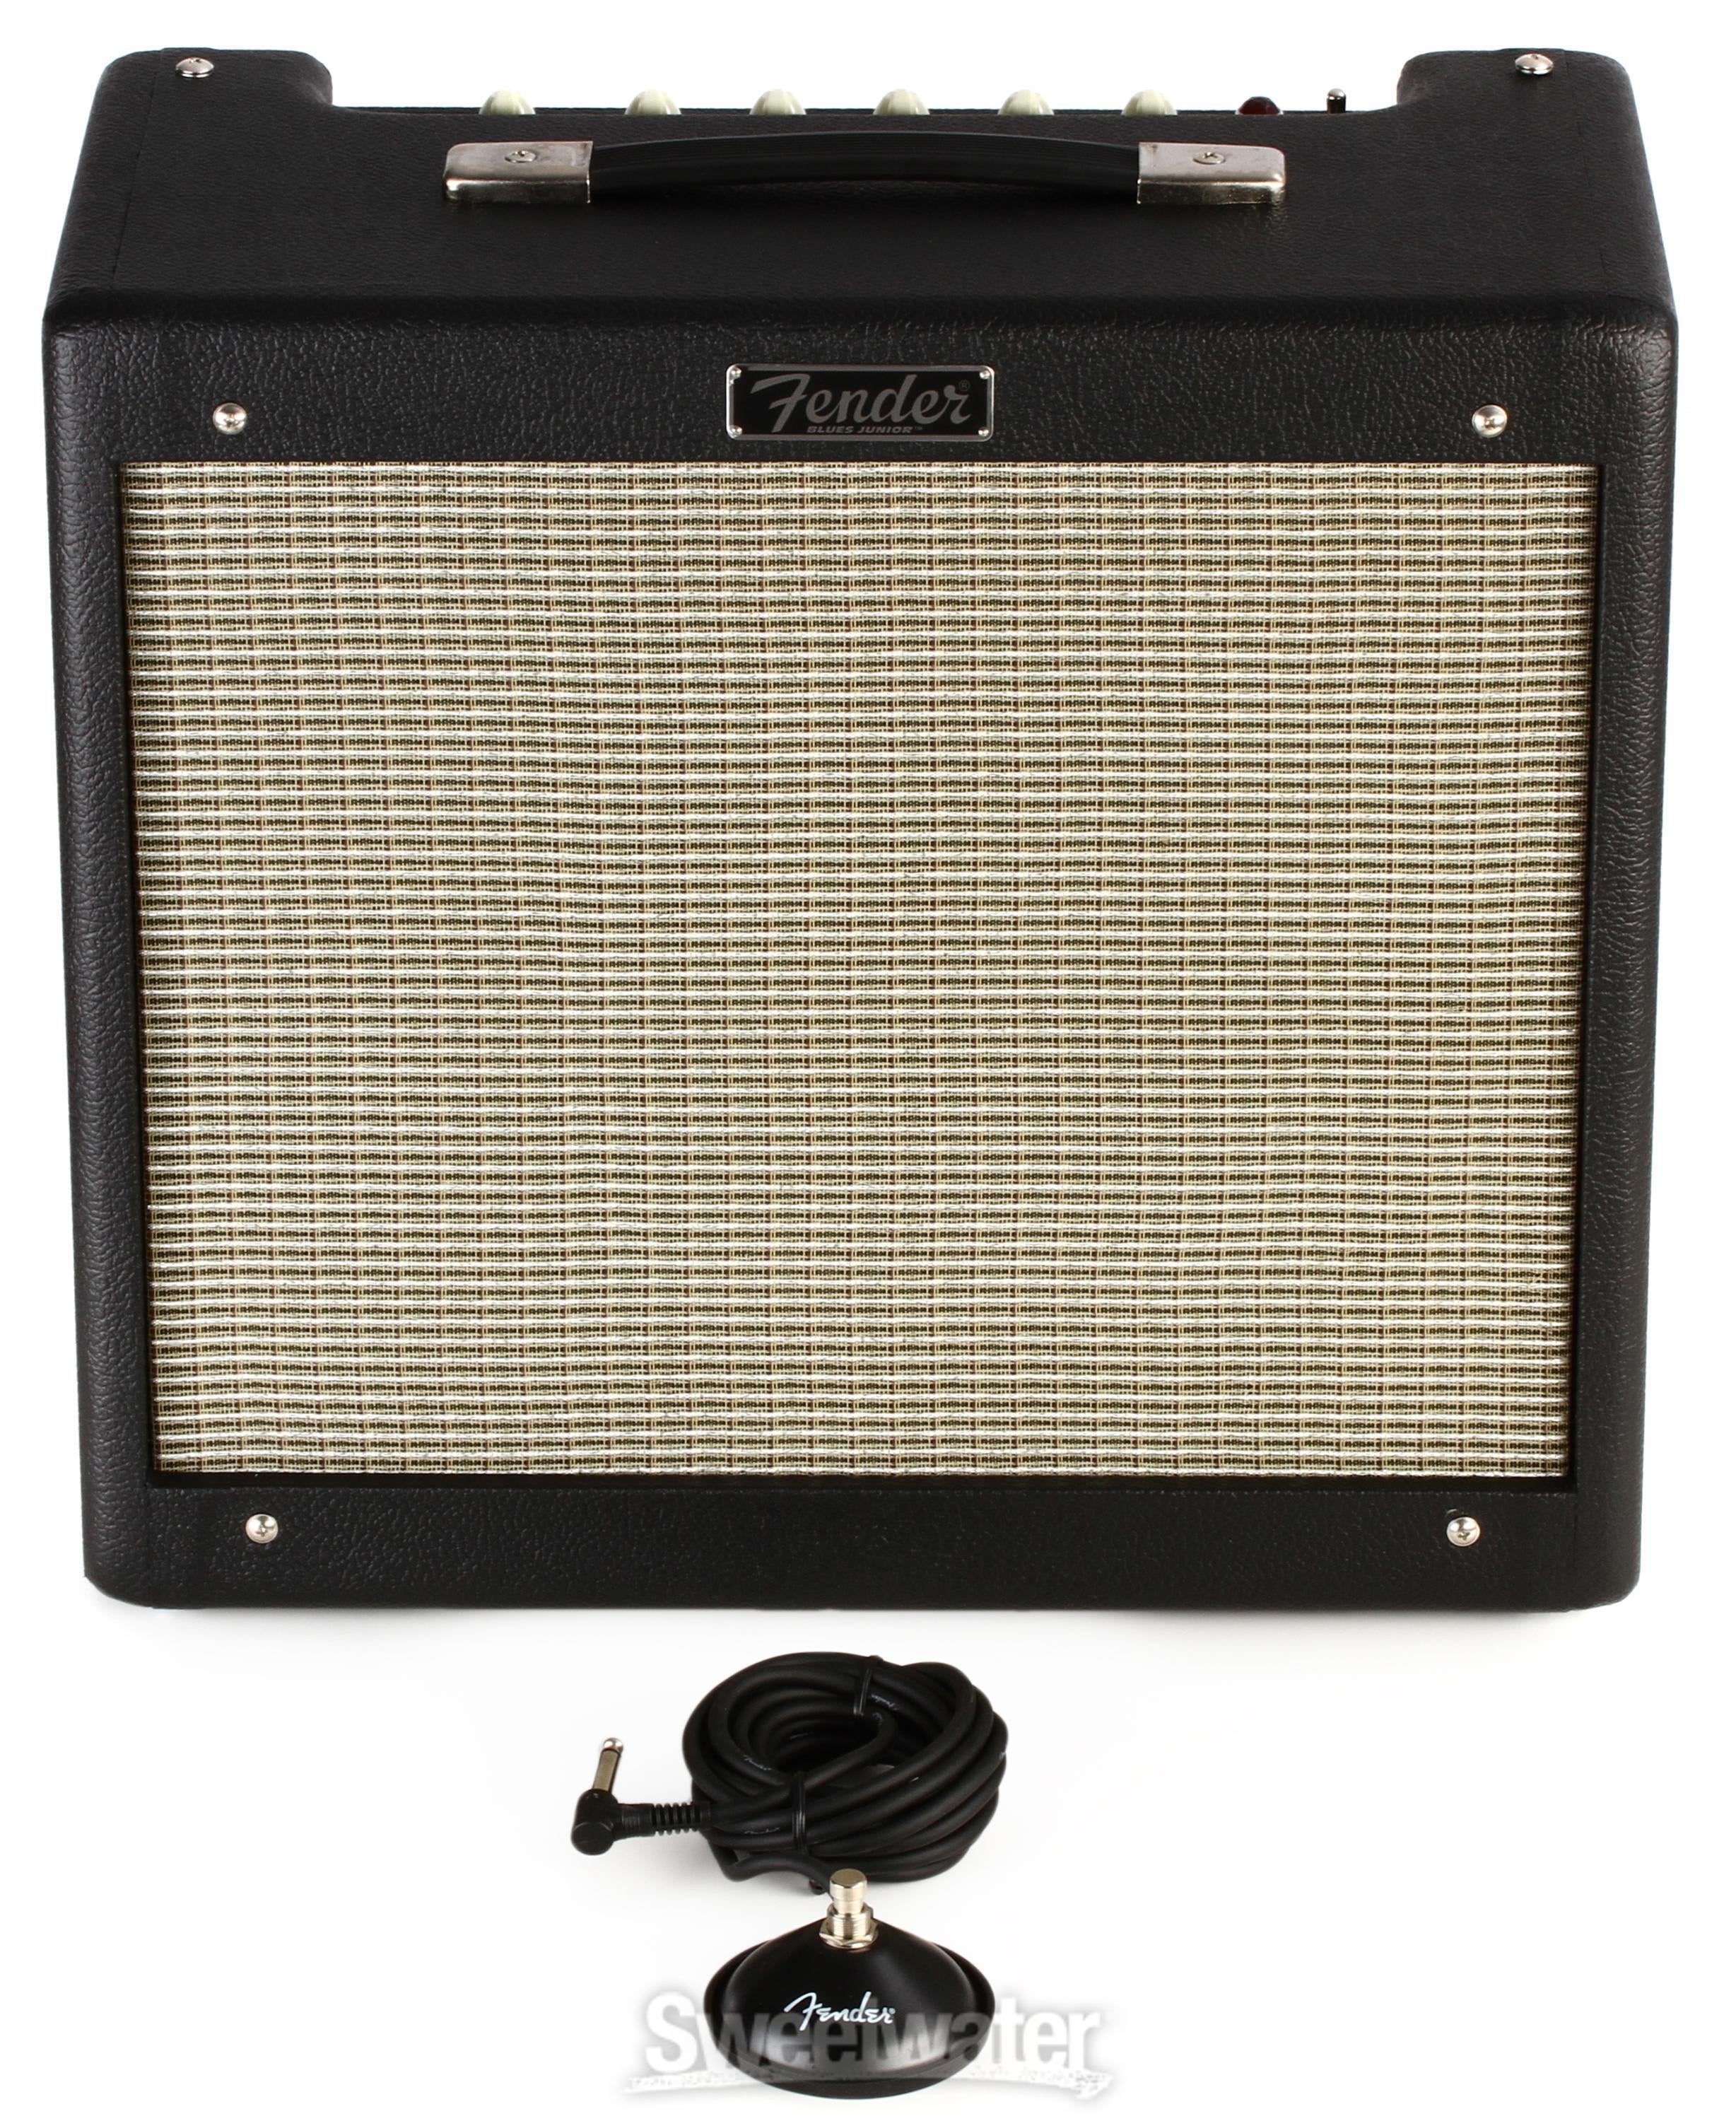 Fender Blues Junior IV 1 x 12-inch 15-watt Tube Combo Amp - Black